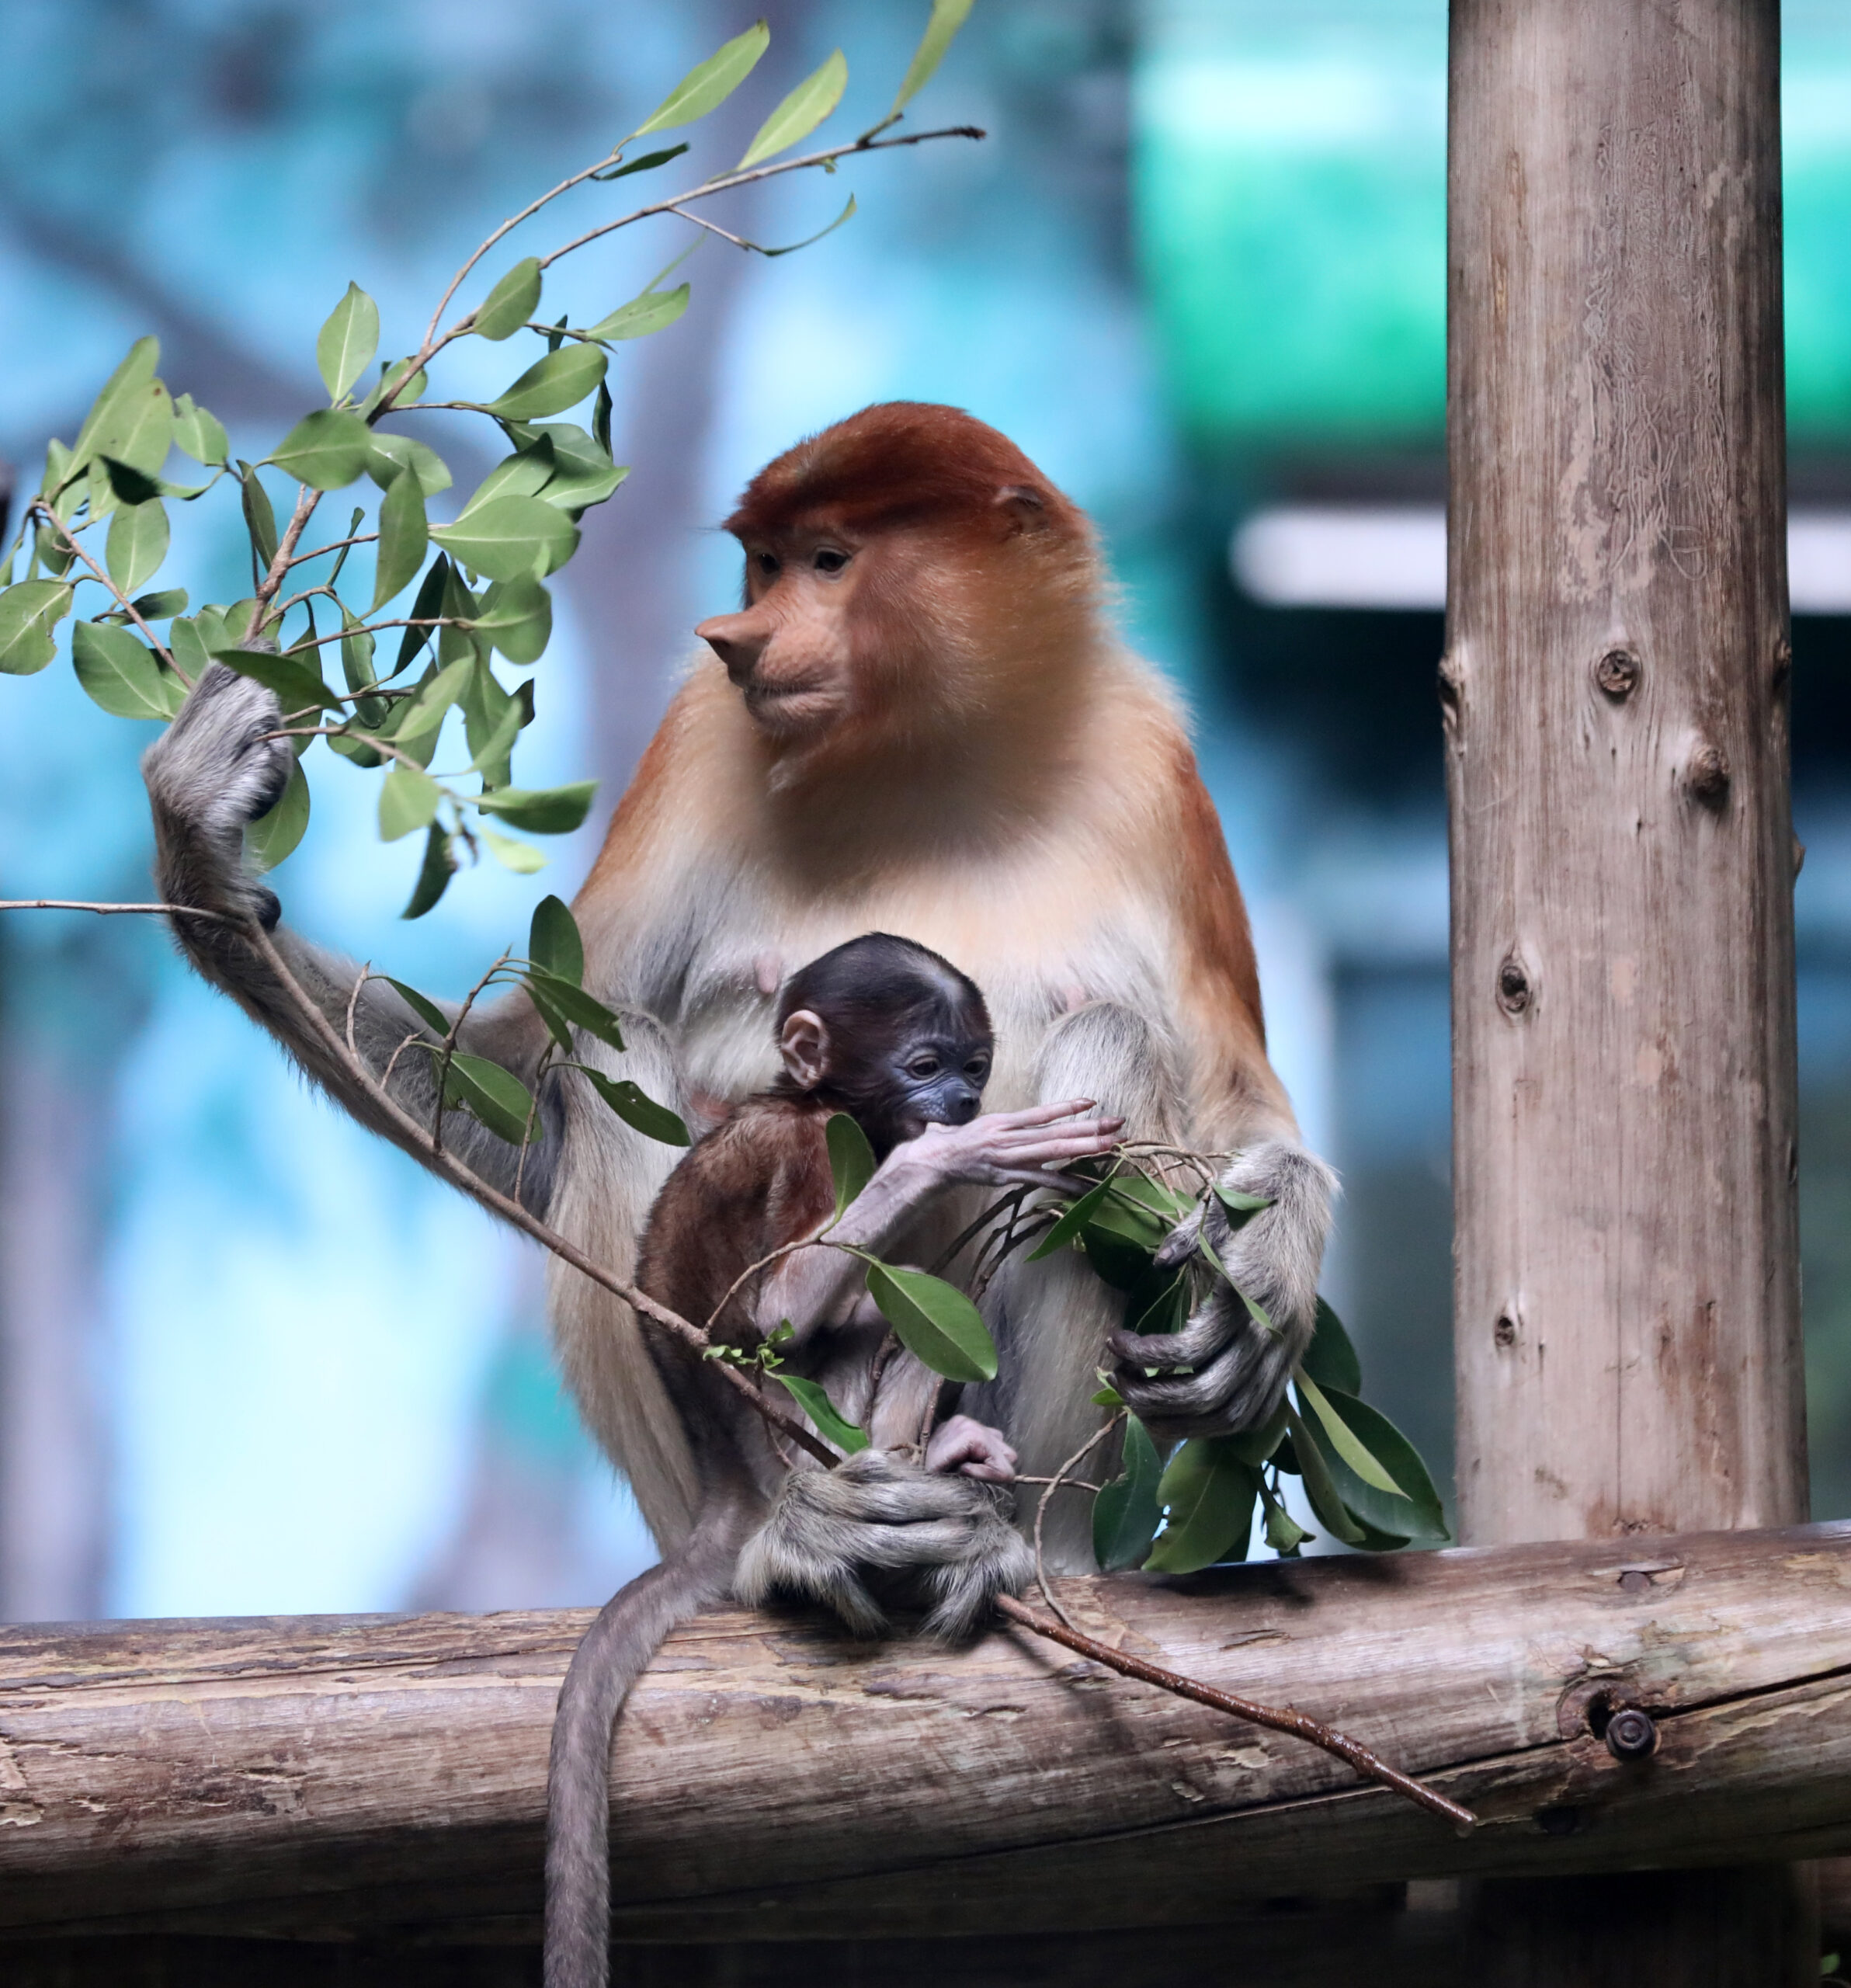 สวนสัตว์ฯ ในกว่างตง ต้อนรับลูกลิงจมูกยาวเกิดใหม่ 2 ตัวในปี 2022